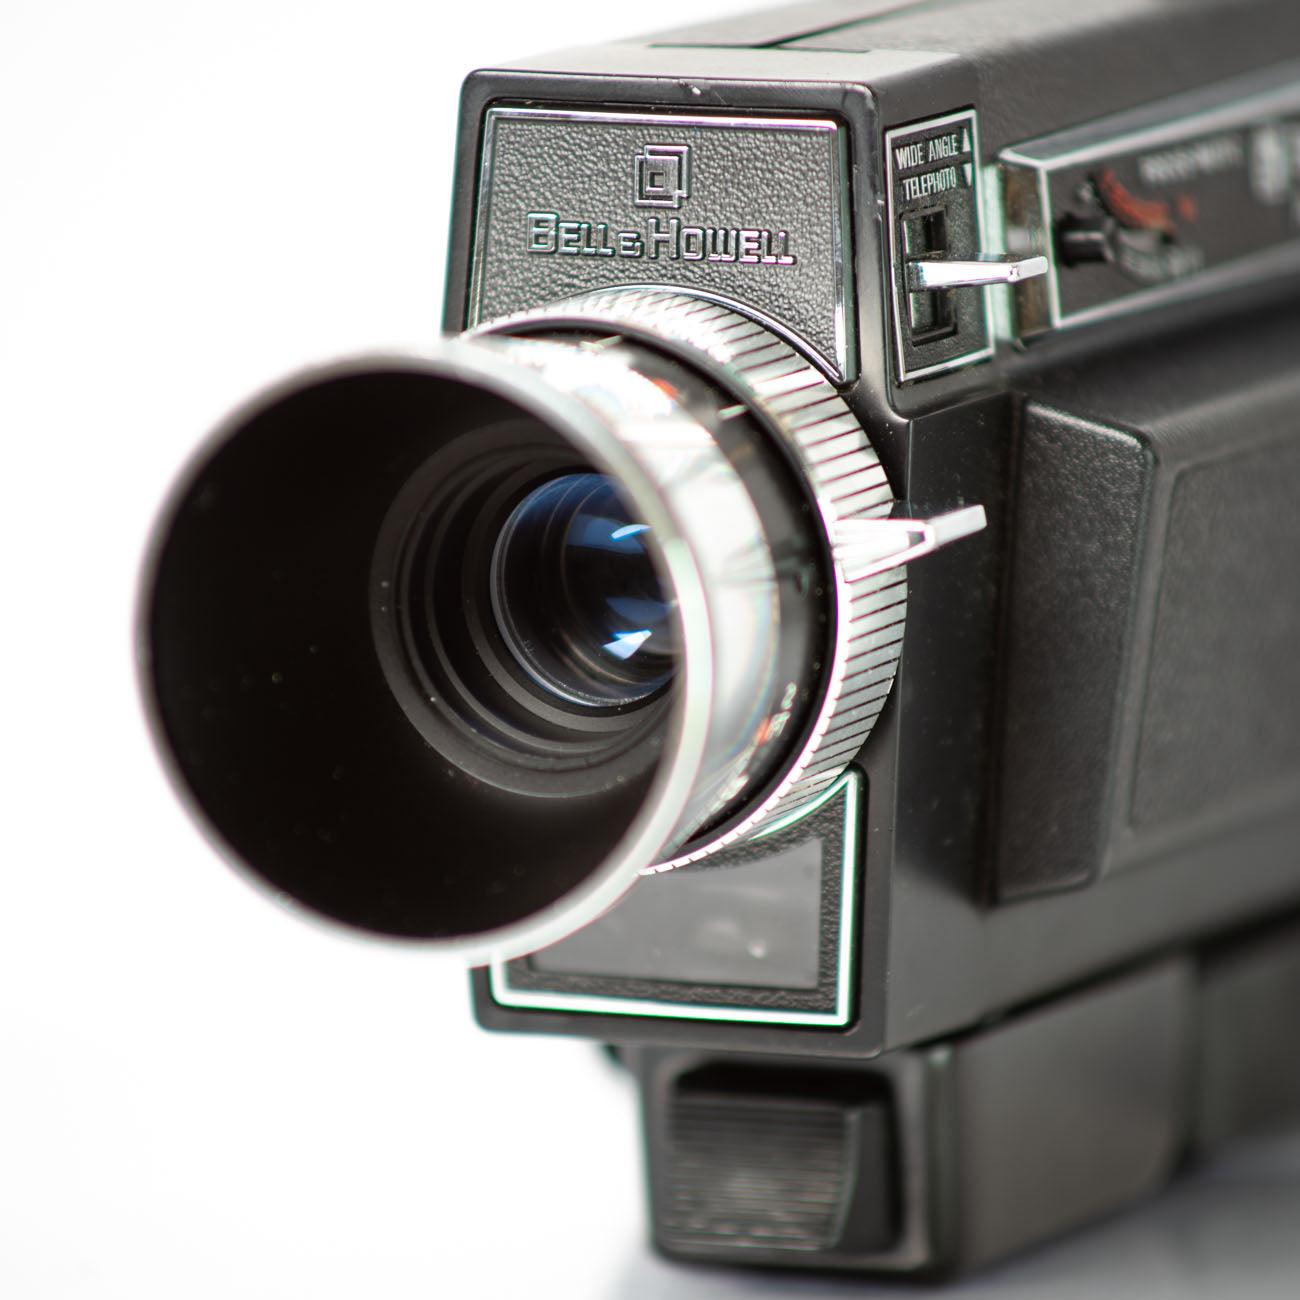 Bell & Howell autoload camera super 8